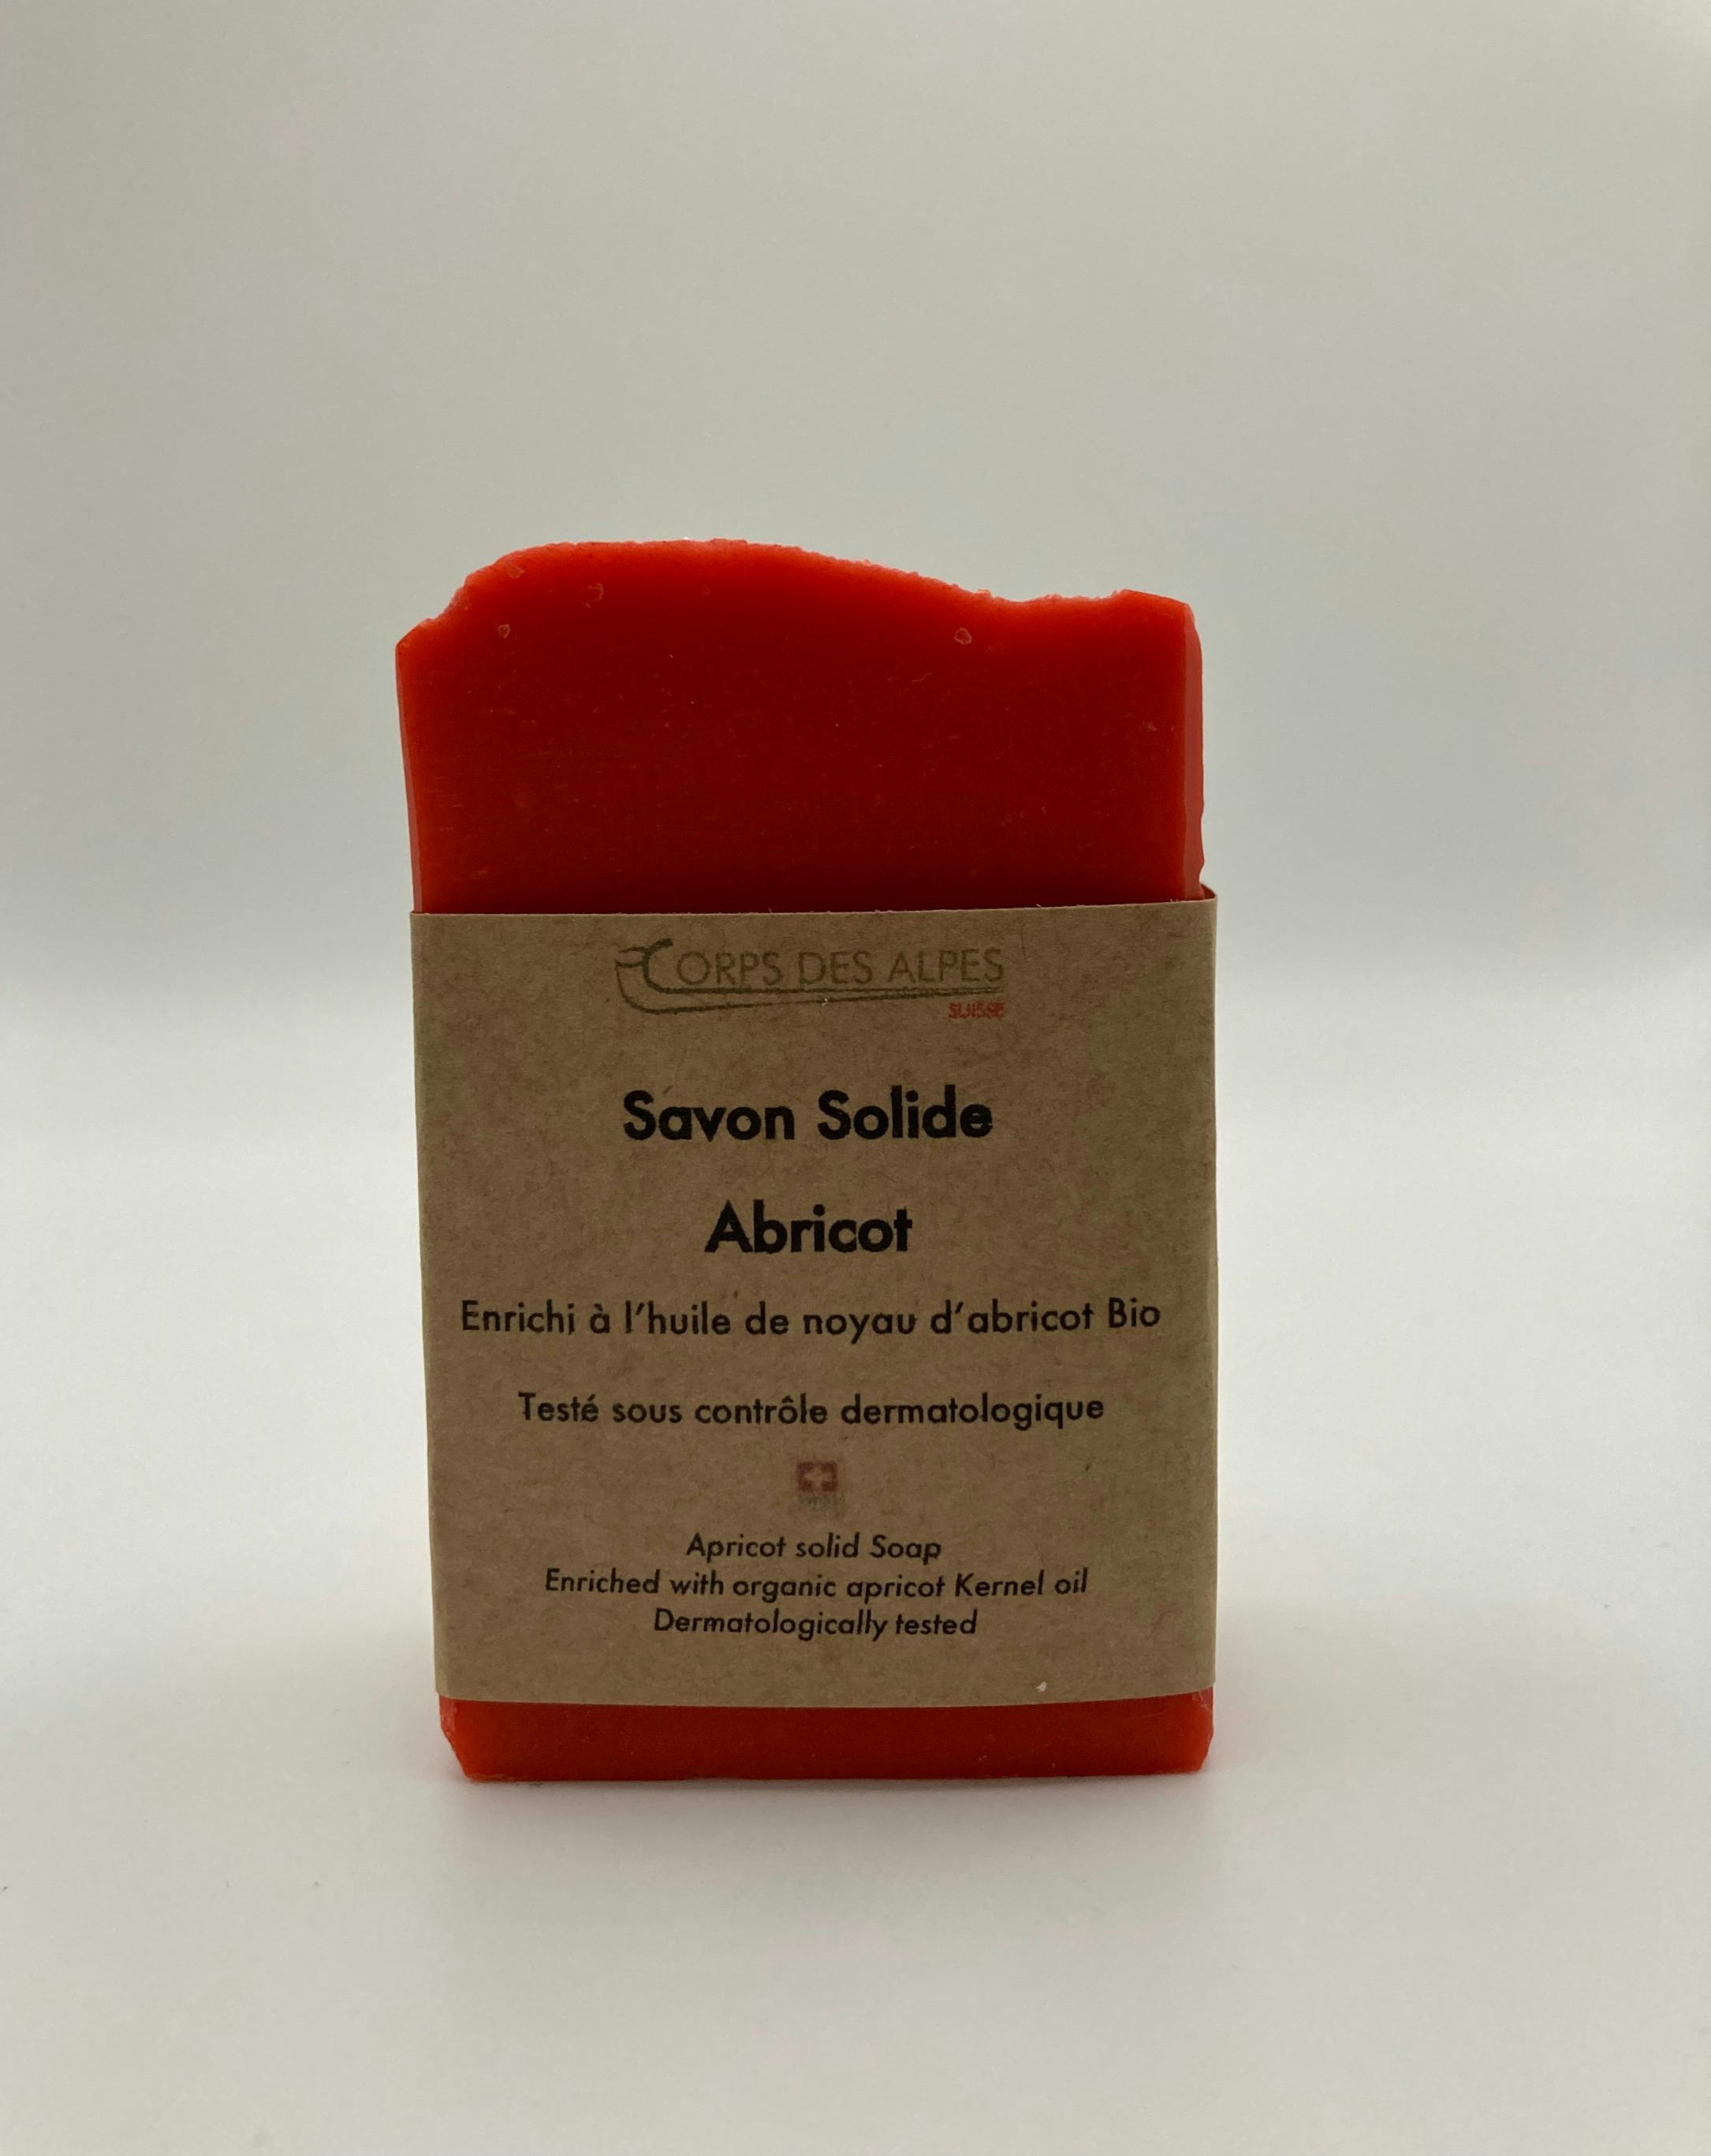 Savon Solide Abricot, prodotto artigianale per la vendita diretta in Svizzera